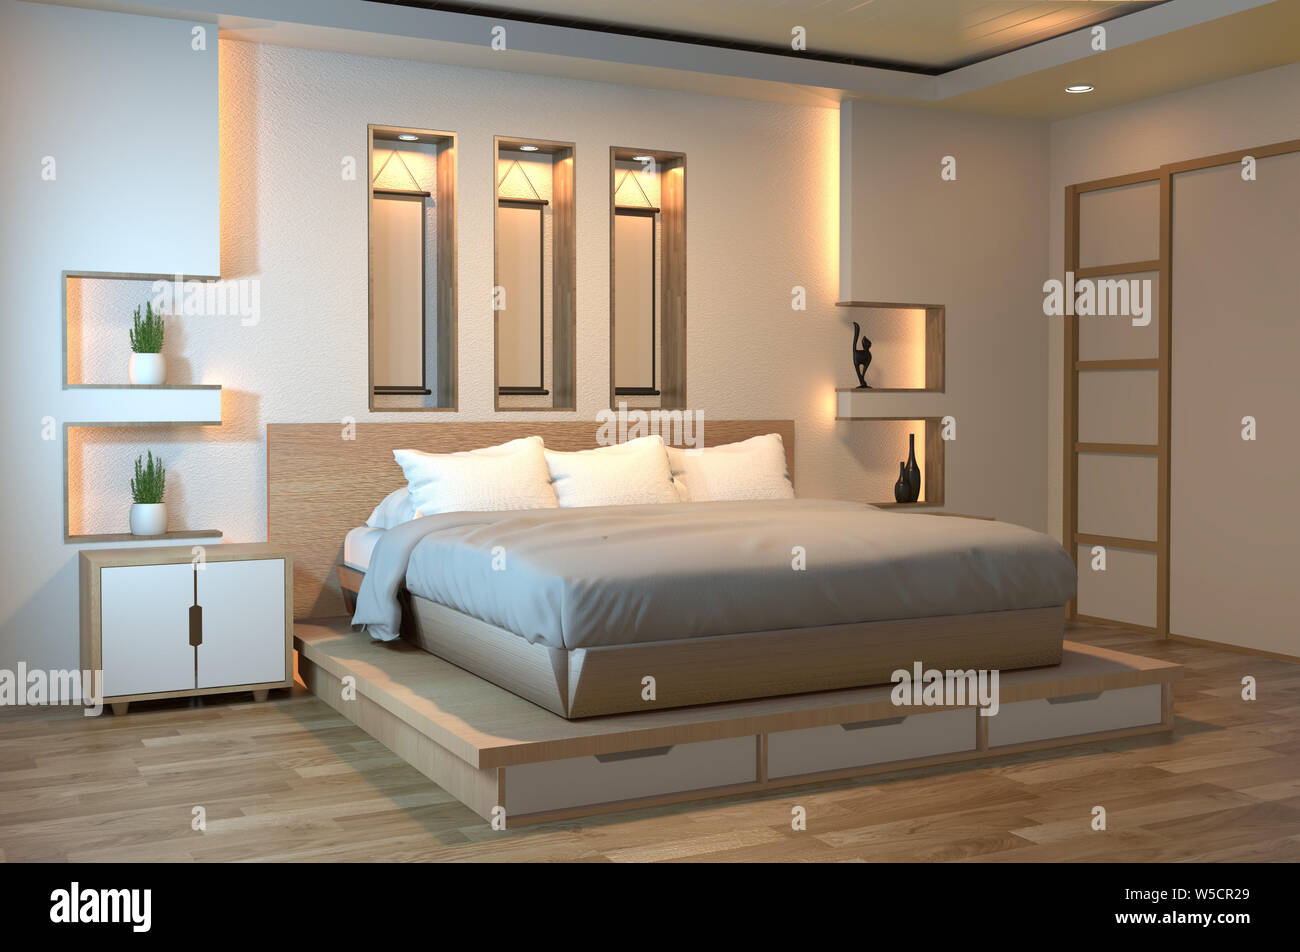 Moderne zen ruhige Schlafzimmer. Japan style Schlafzimmer mit Regal Wand  design versteckte Licht und Dekoration im japanischen Stil. 3D-Rendering  Stockfotografie - Alamy